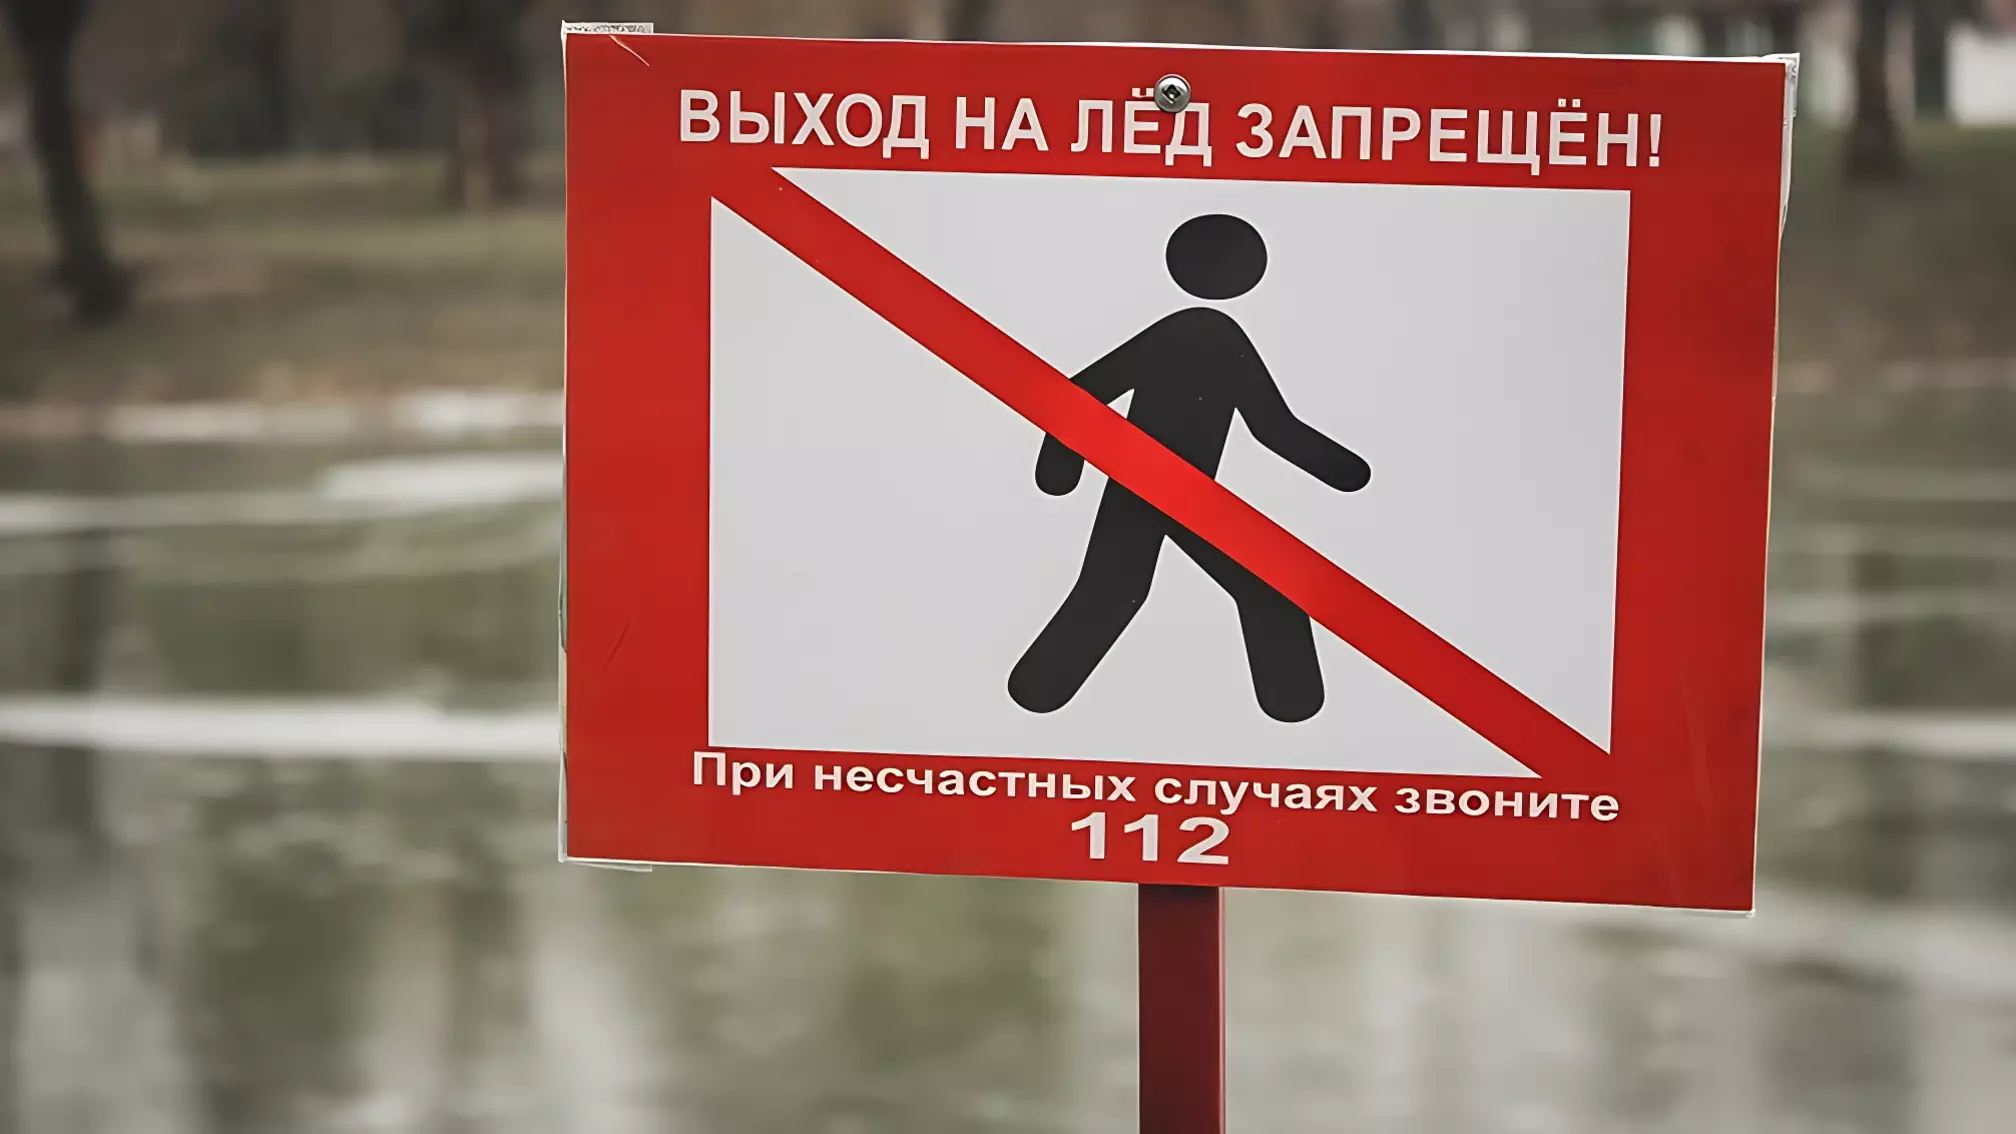 Дети играют в опасные игры на льду в Петрозаводске